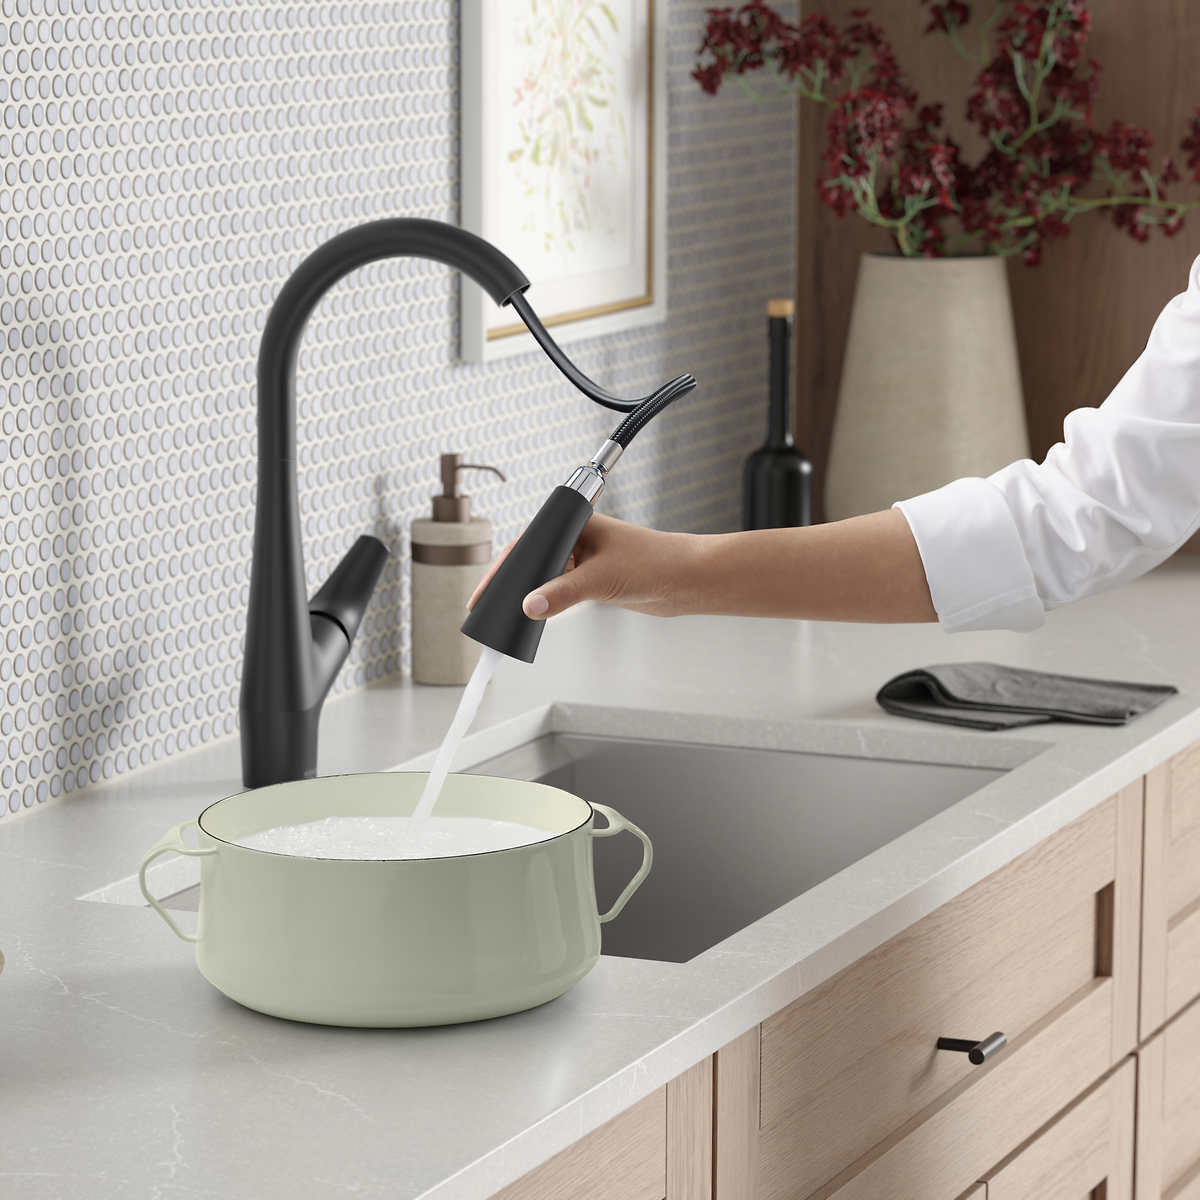 kohler-robinet-cuisine-rétractable-lir-pull-down-kitchen-faucet-533449-bl-6